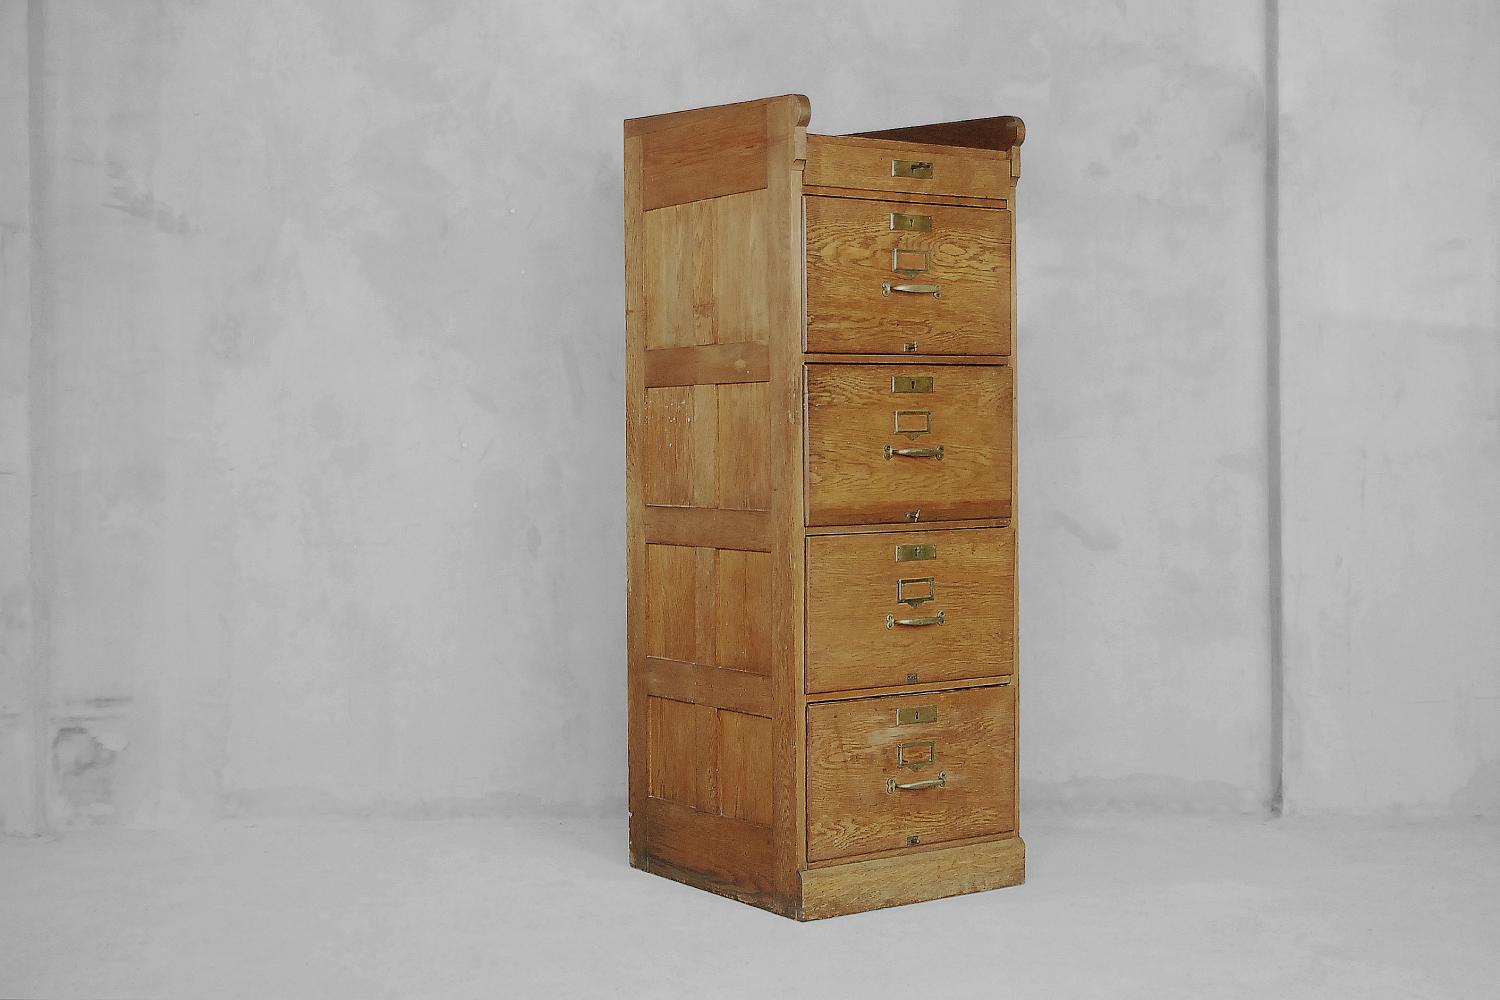 Ce meuble ancien a été fabriqué en Angleterre dans la première moitié du 20e siècle. Il est fabriqué en bois de chêne massif. Il comporte quatre tiroirs profonds avec compartiments et un plus petit sous le plateau. Les tiroirs sont dotés d'un